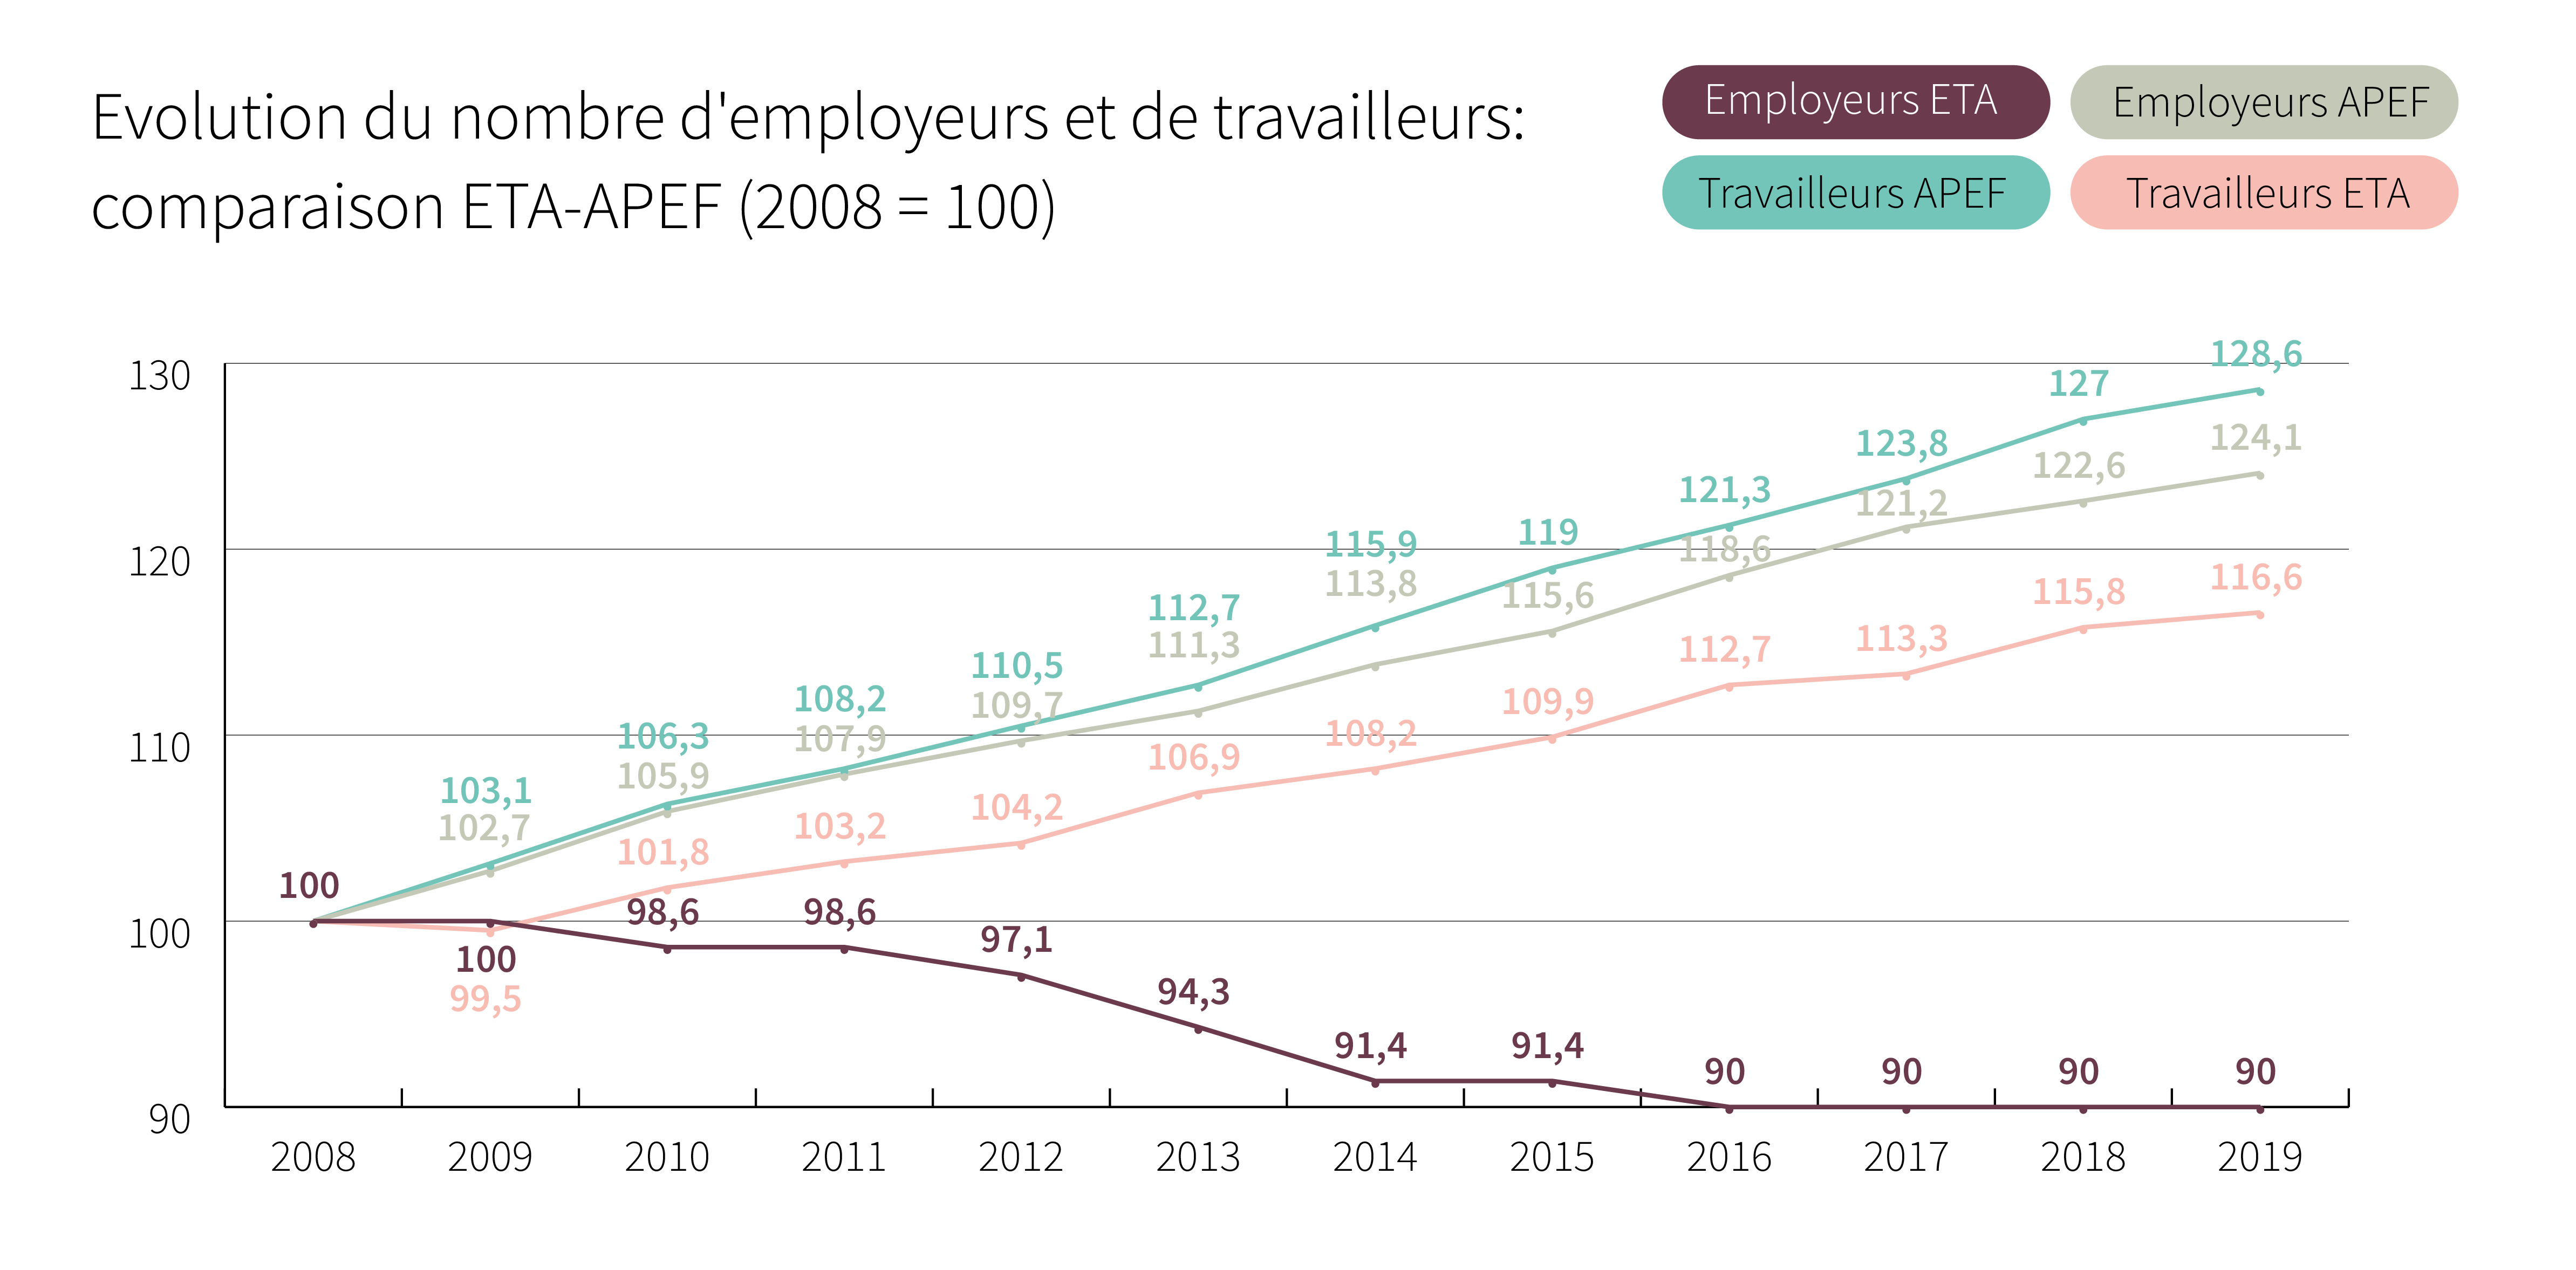 Evolution du nombre d’employeurs et de travailleurs: comparaison ETA-APEF (2008 = 100) - Cliquez pour agrandir